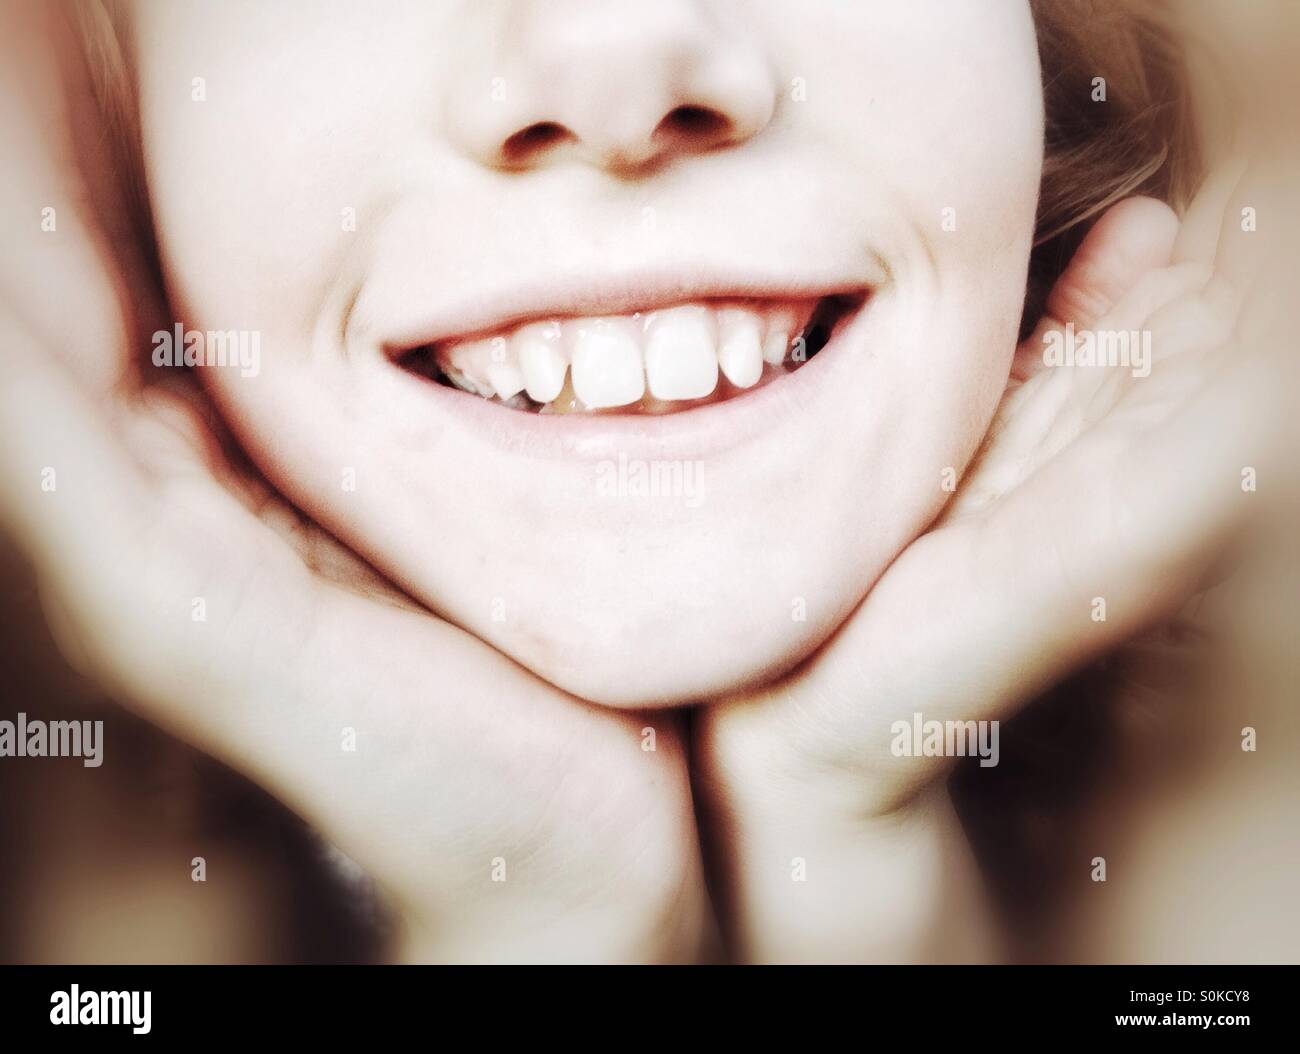 La faccia inferiore della ragazza sorridente con il suo mento tazza nelle sue mani Foto Stock